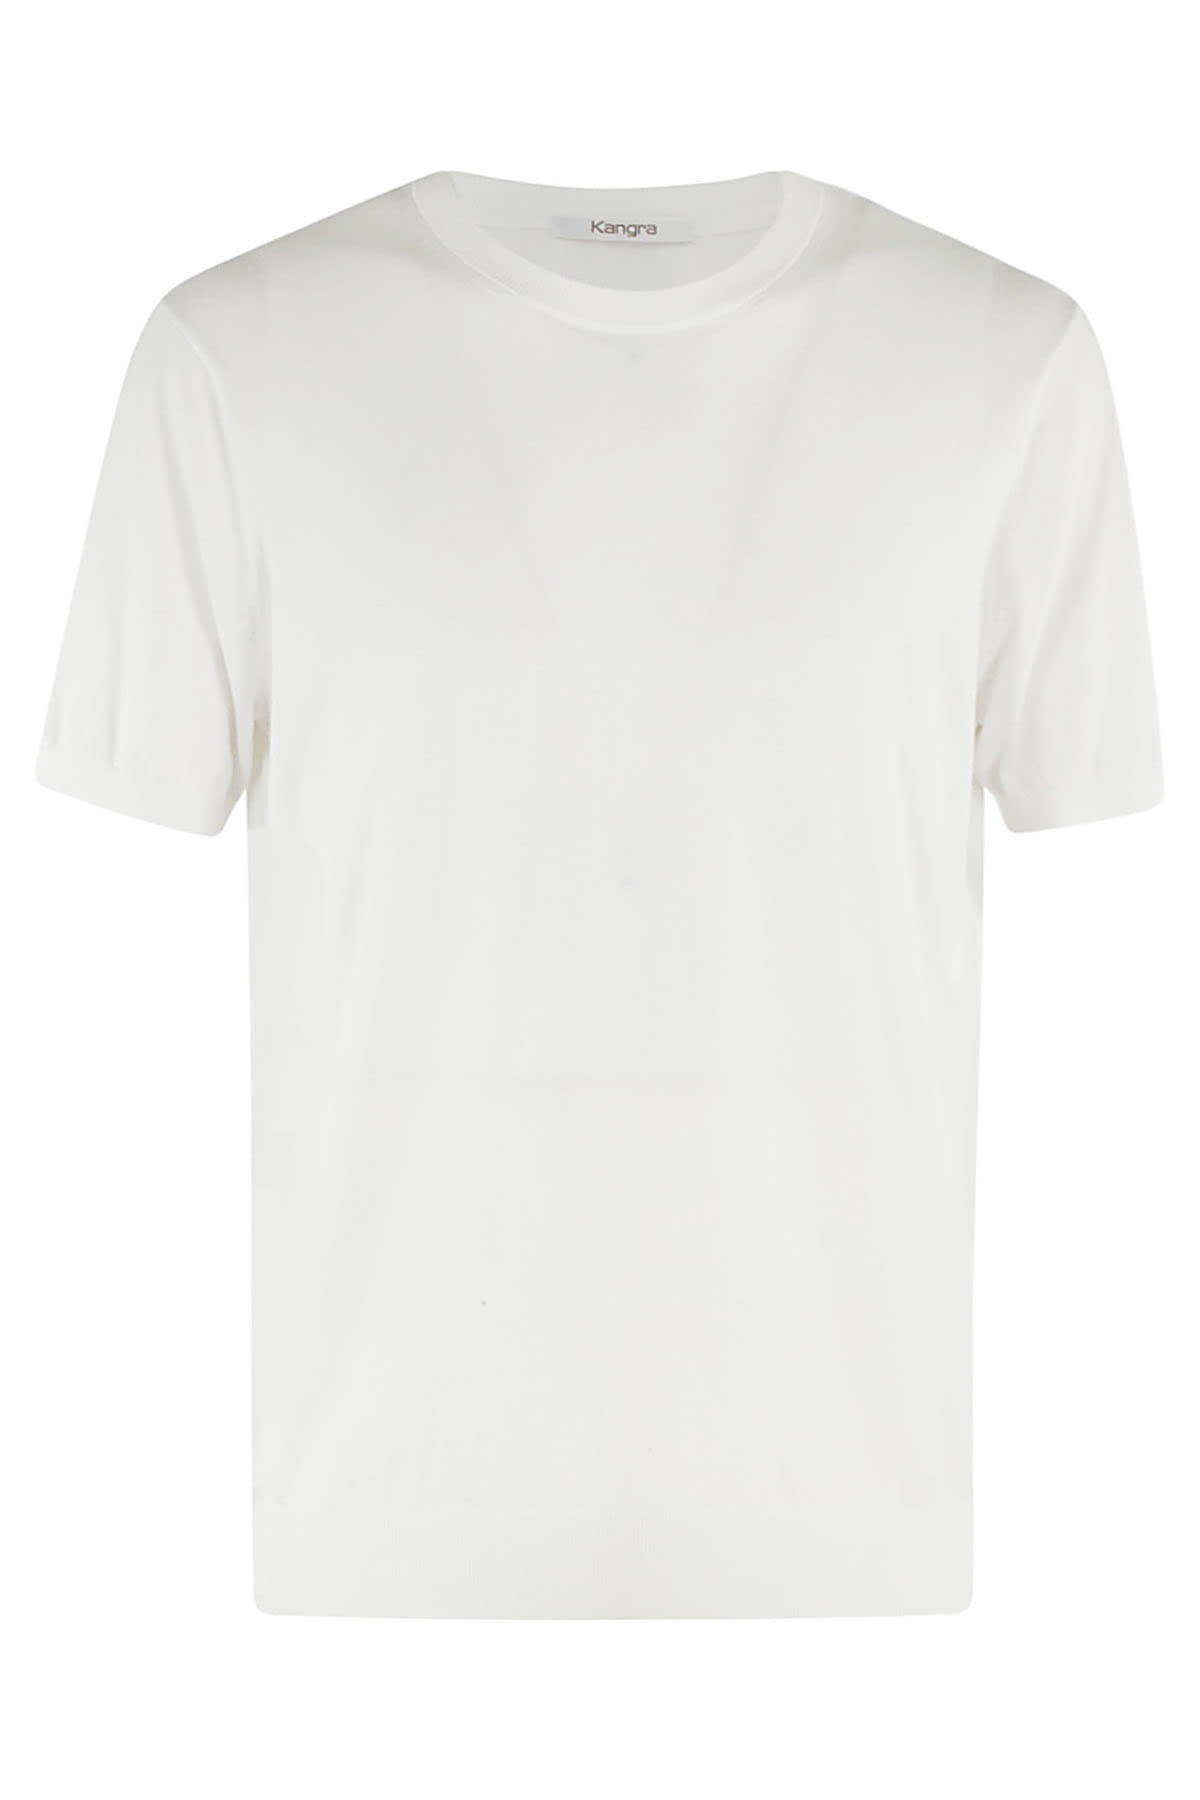 Kangra T Shirt In Bianco